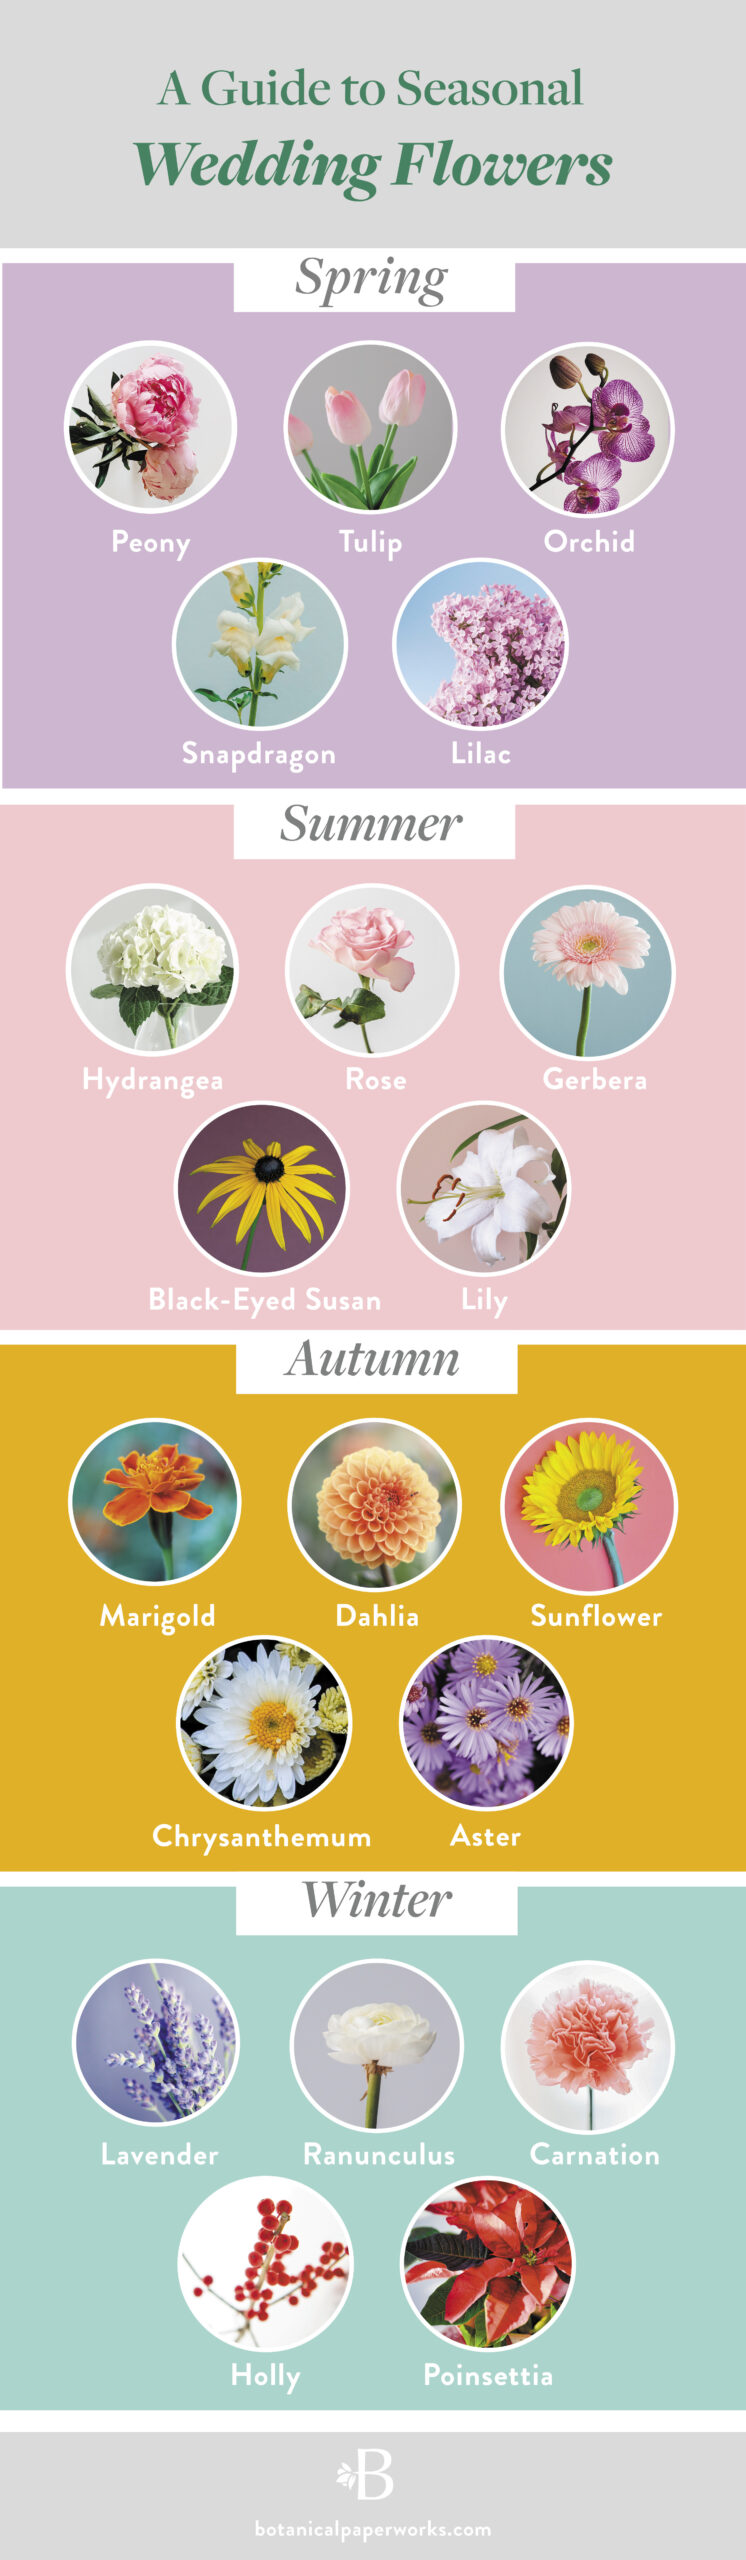 seasonal wedding flowers infographic